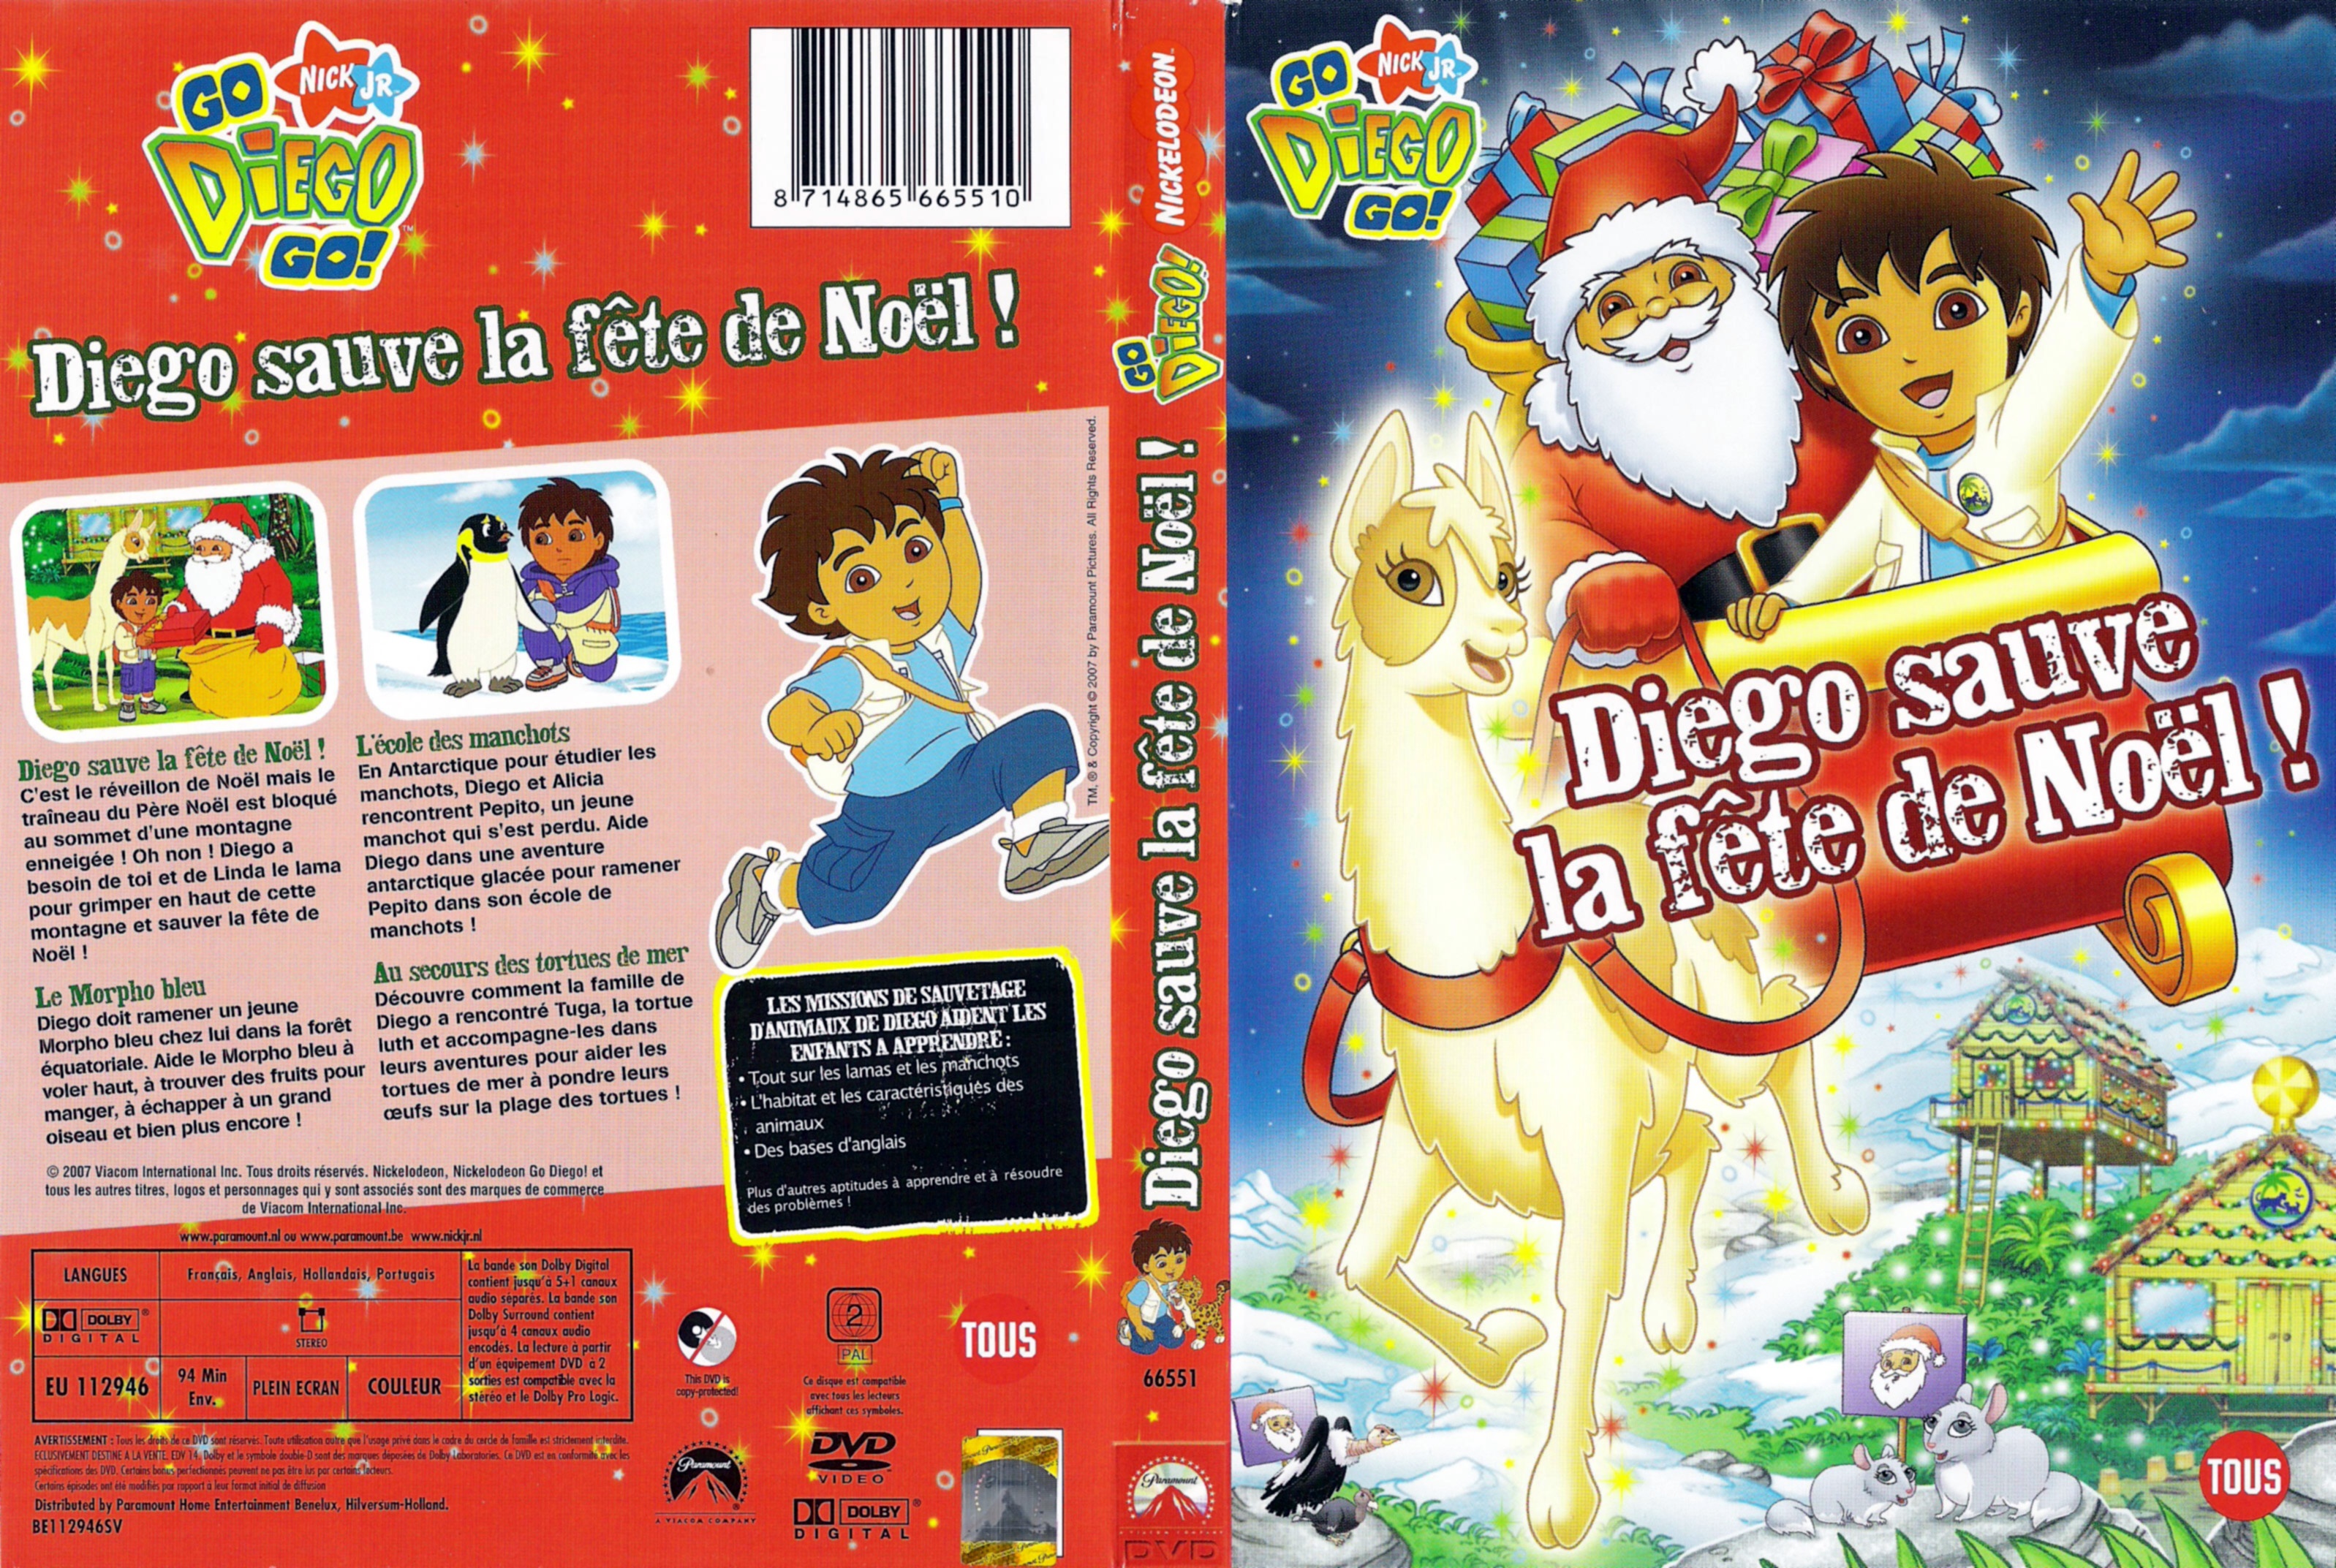 Jaquette DVD Diego sauve la fete de noel